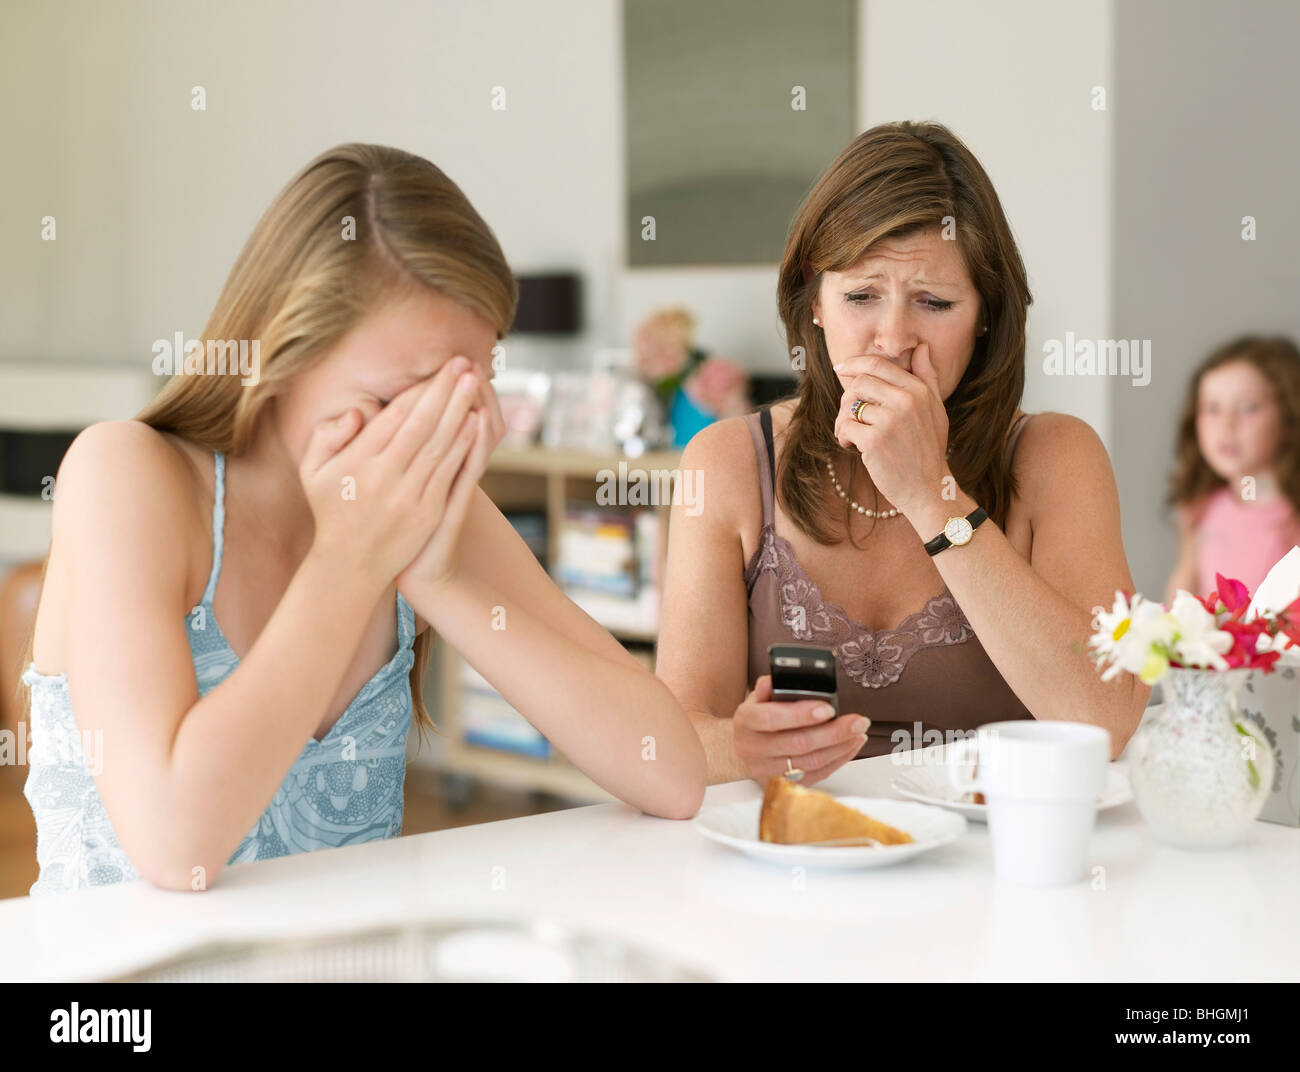 Madre ve cyber bullying en teléfono móvil Foto de stock